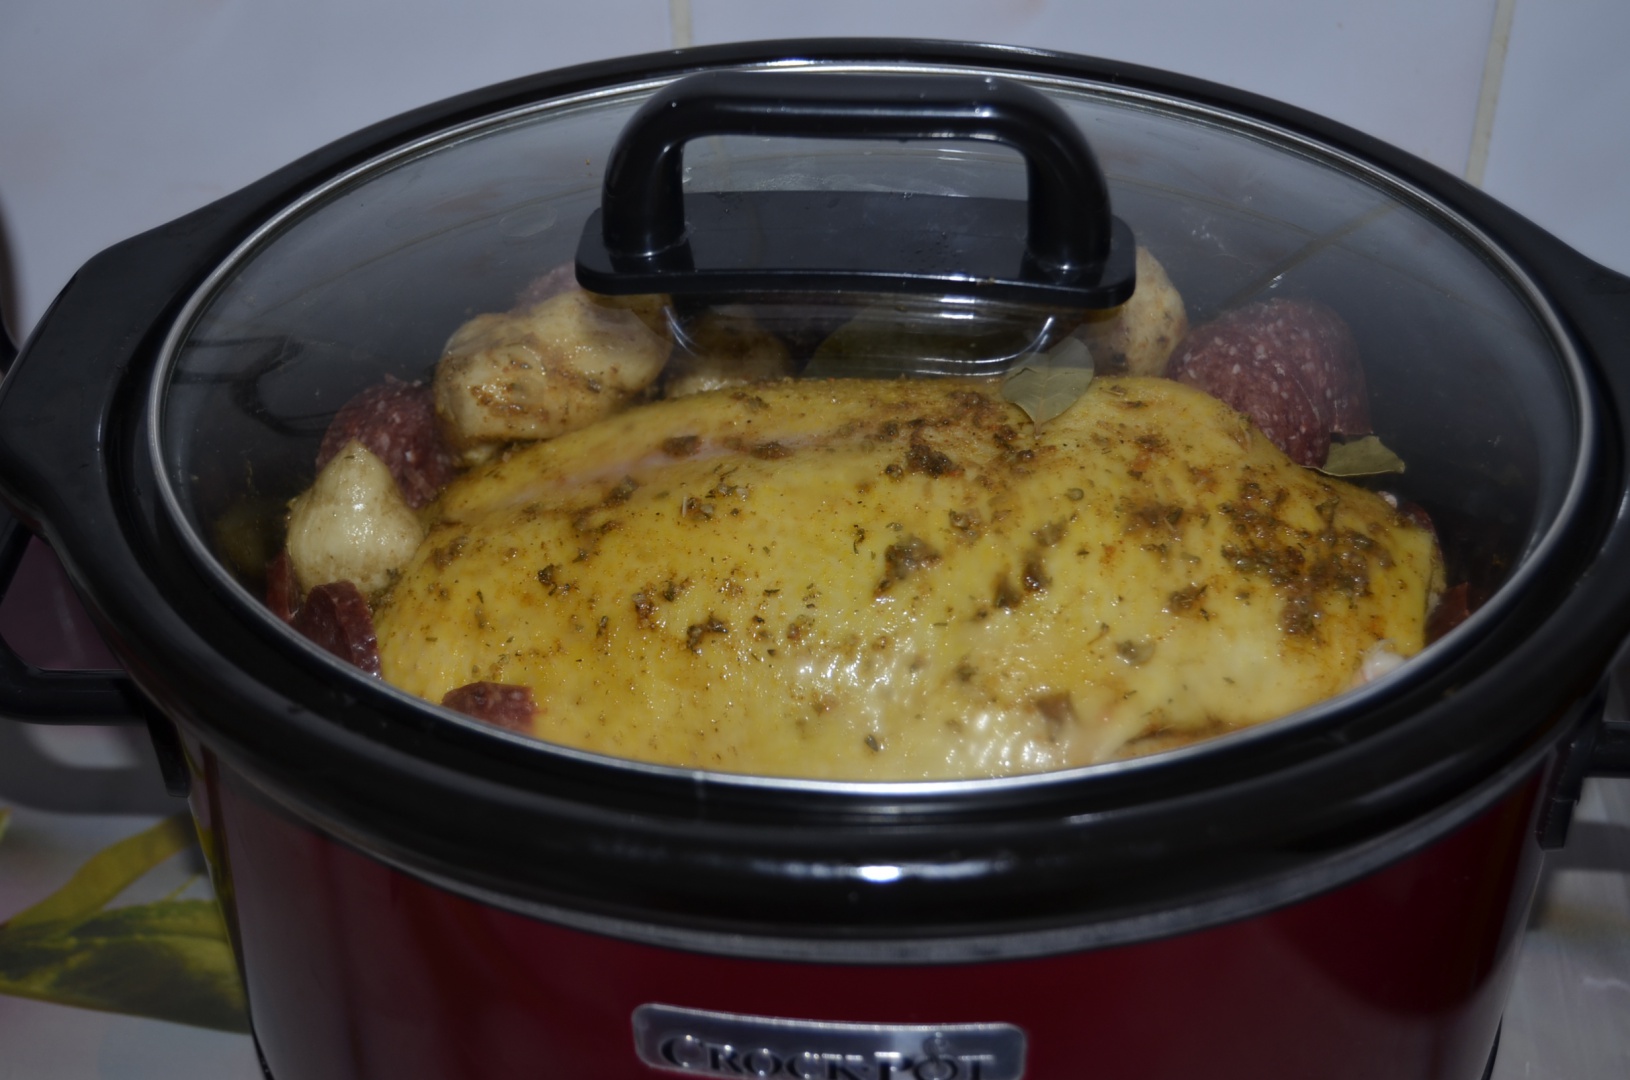 Rata picanta, umpluta cu napi la slow cooker Crock-Pot